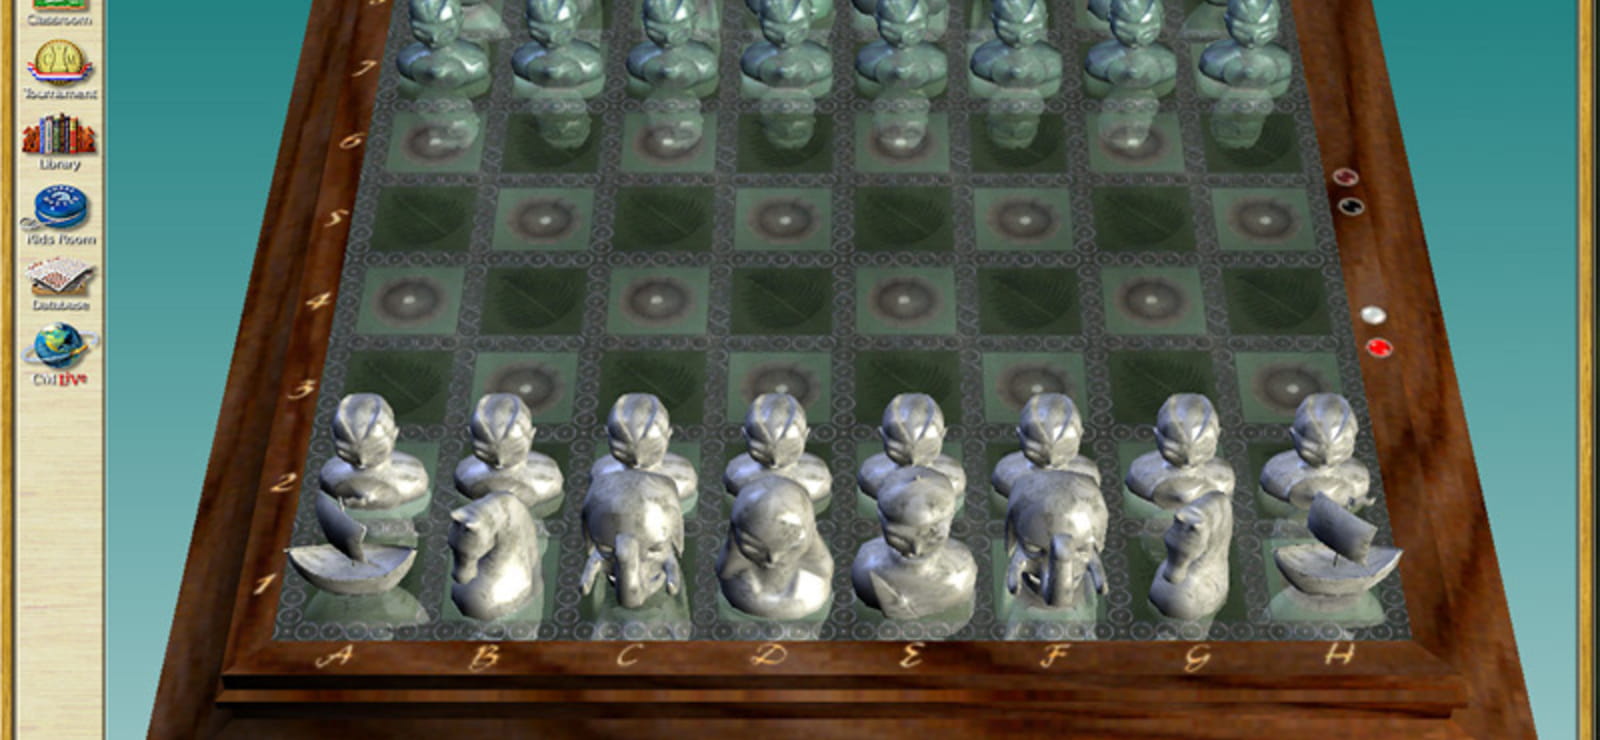 Chessmaster® 9000